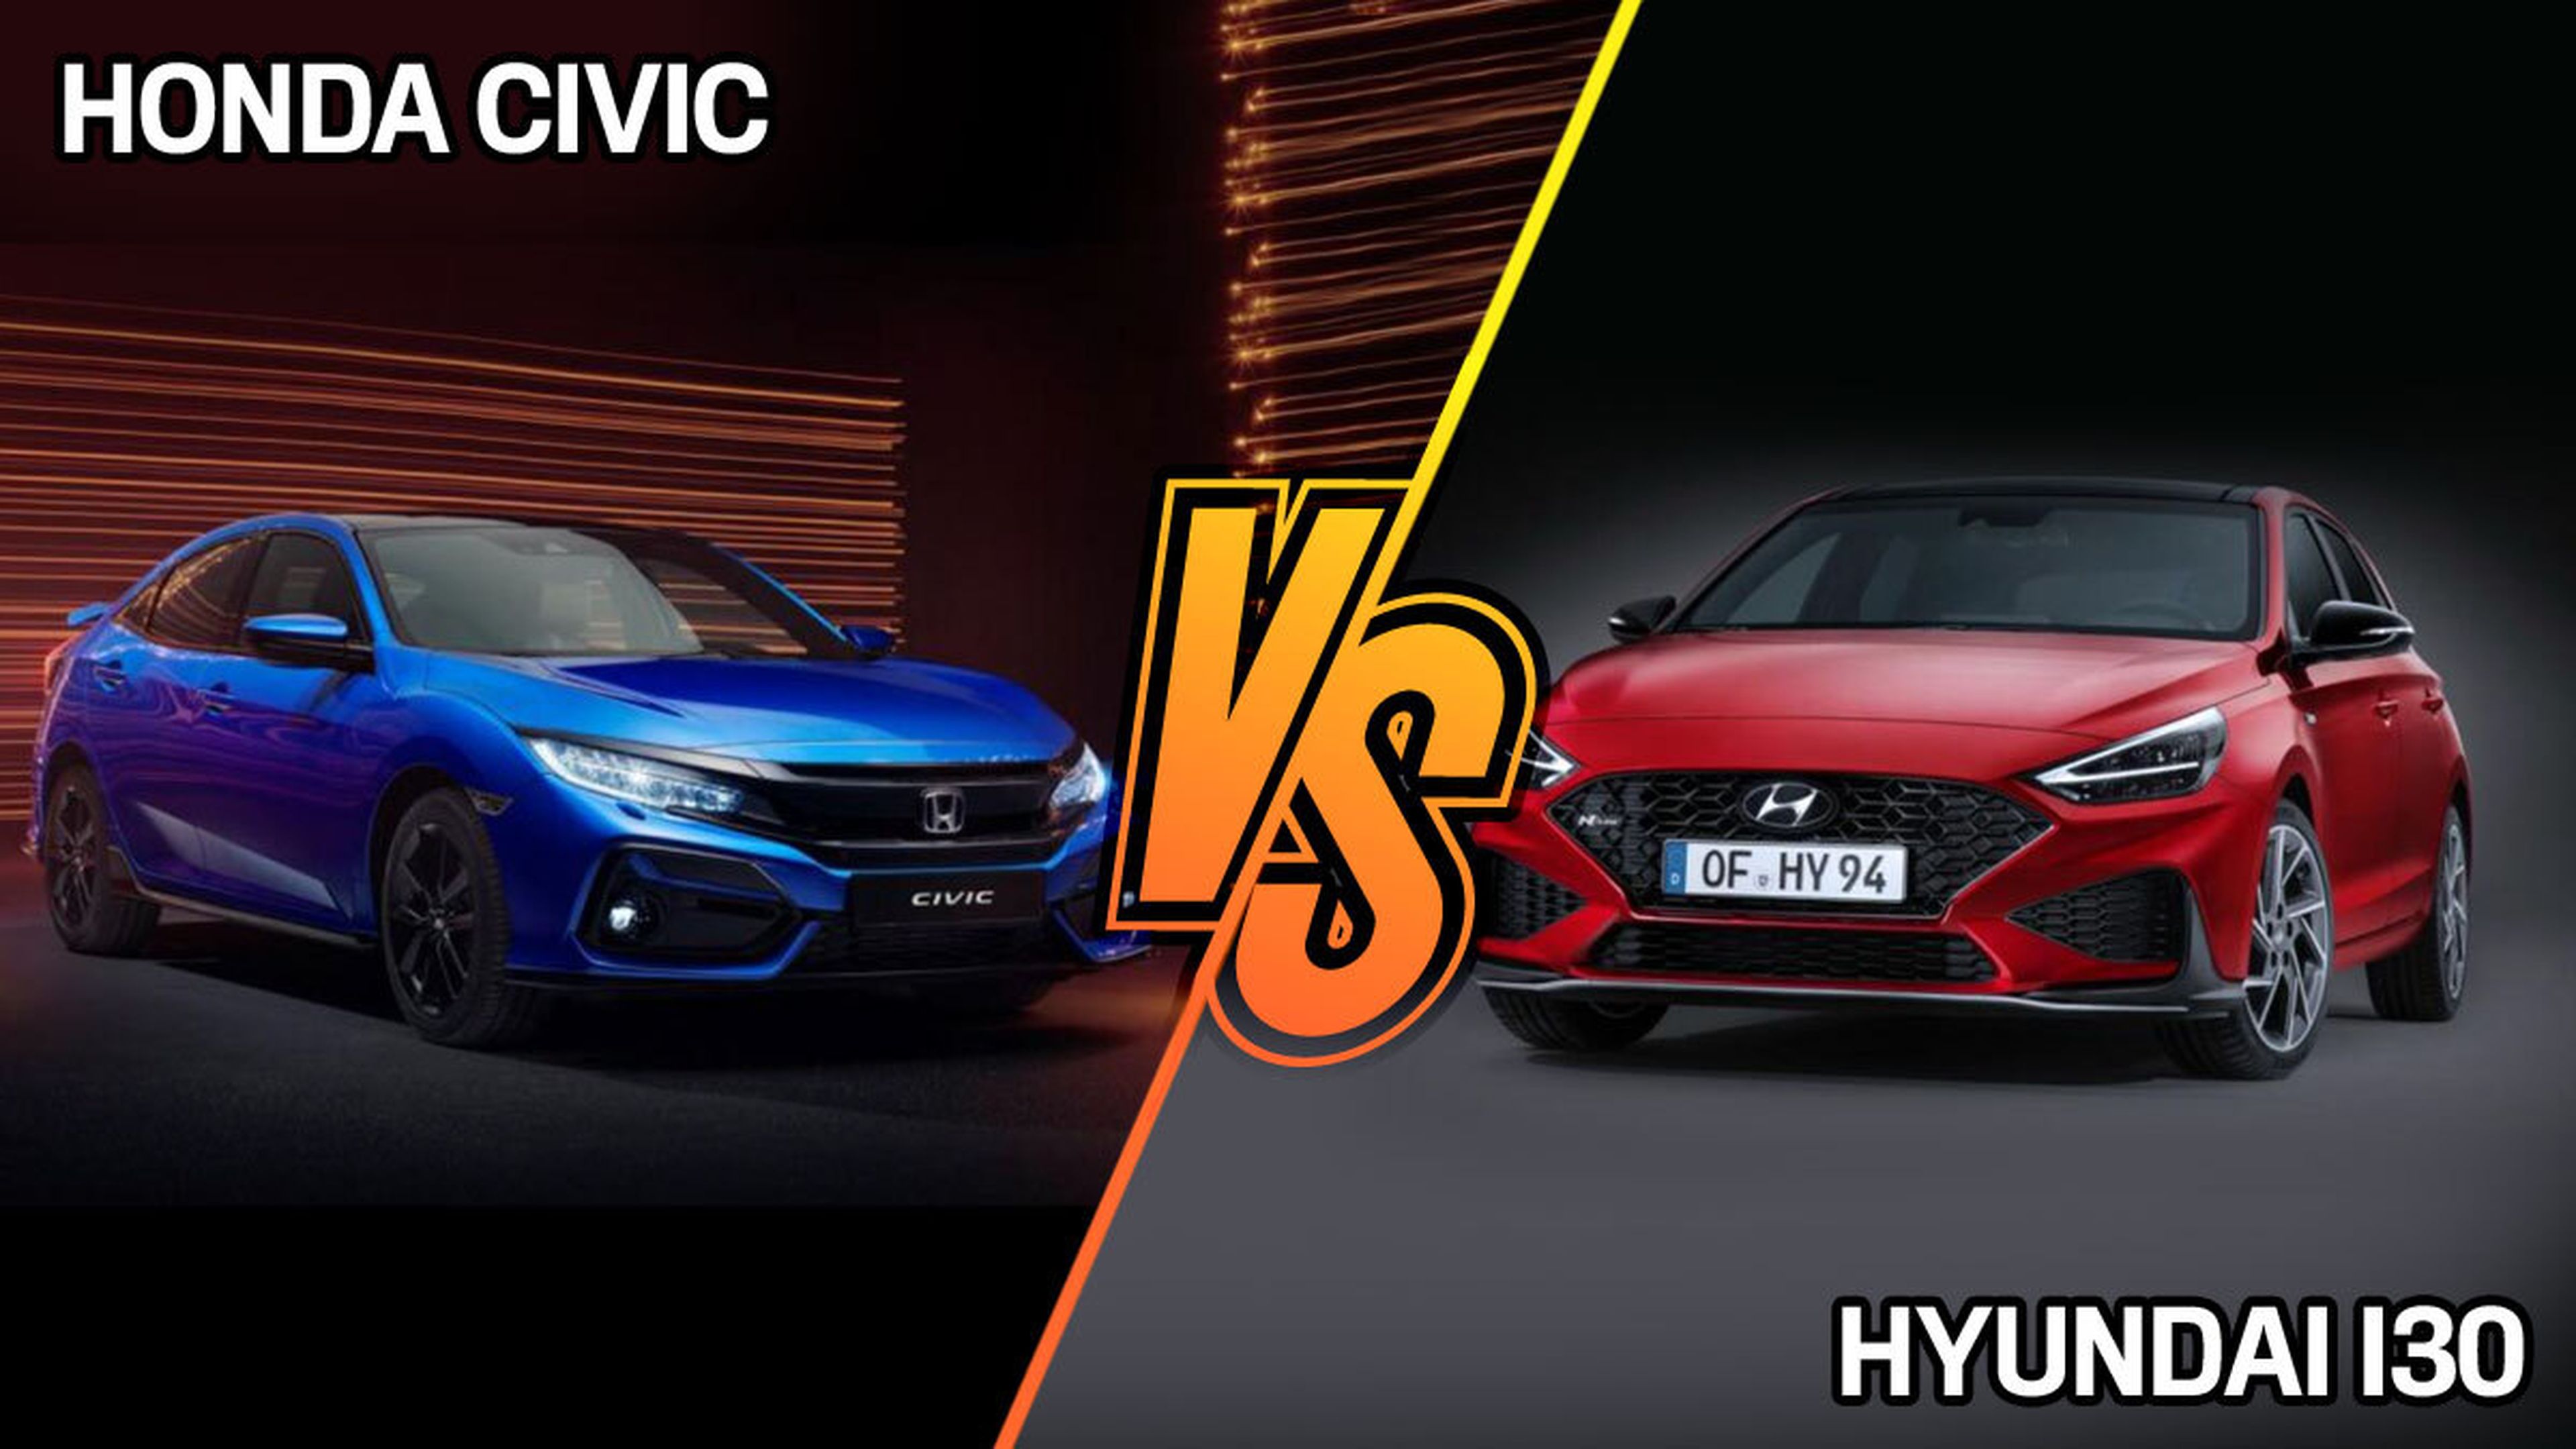 Honda Civic o Hyundai i30 2021: ¿cuál comprar?